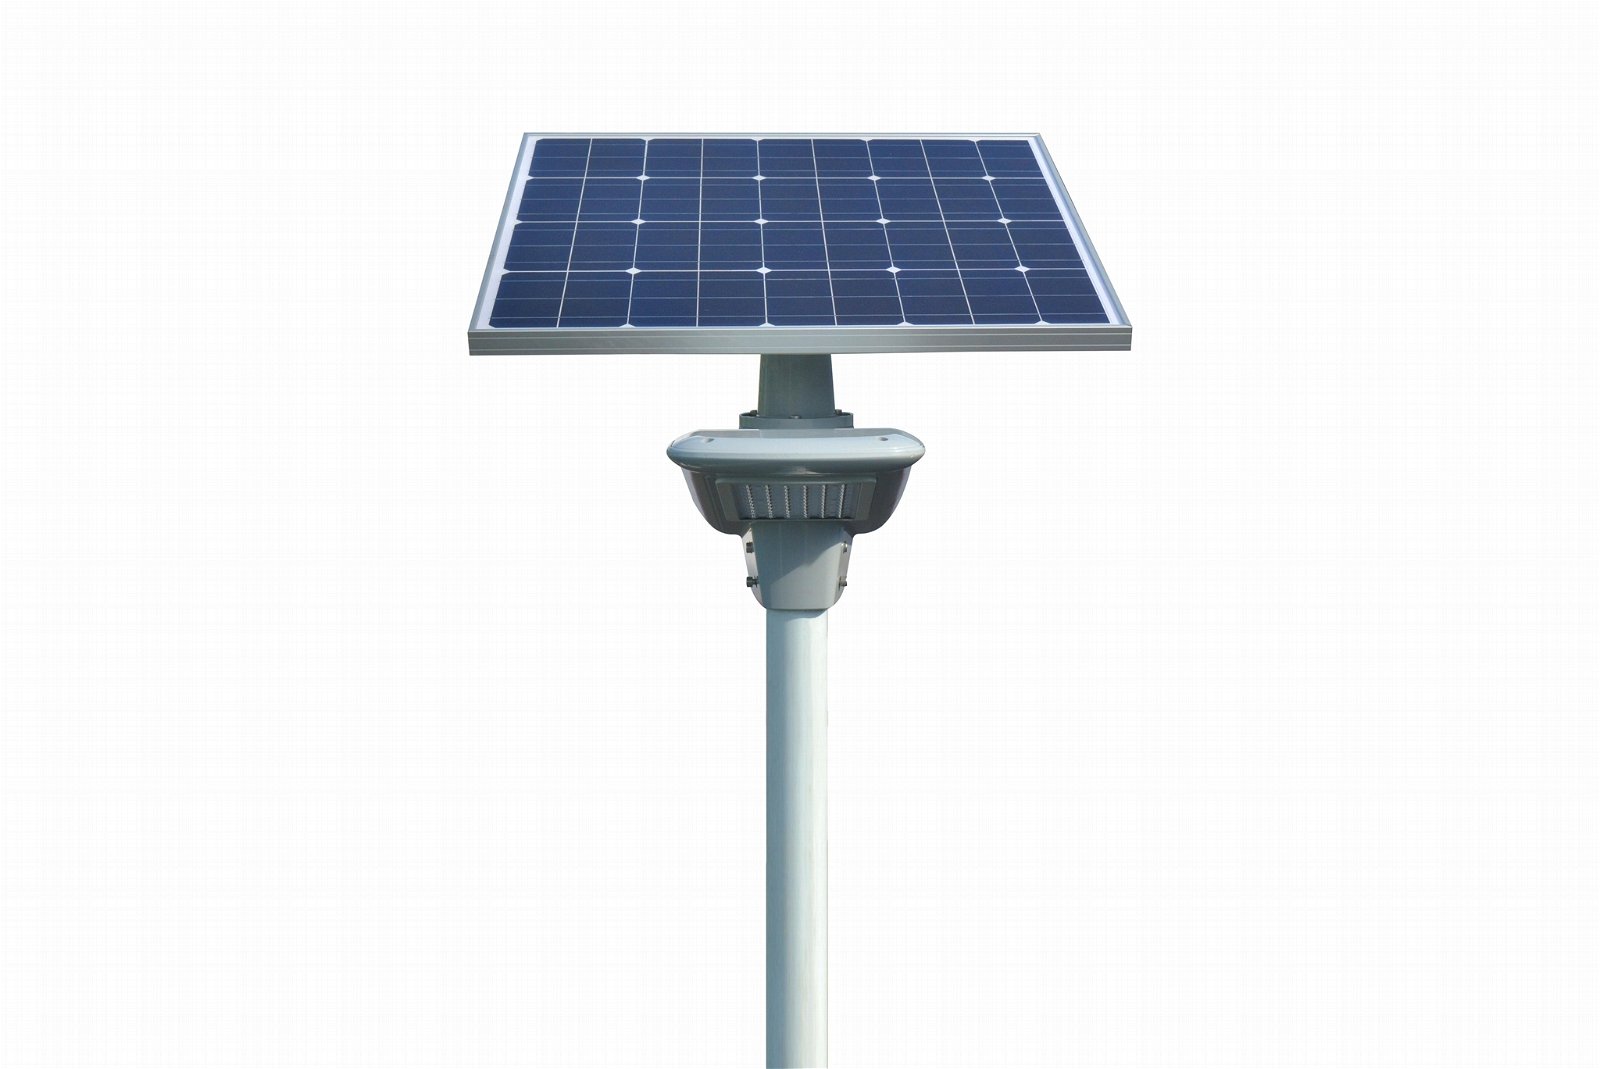 60Watt semi-integrated solar led street lights, solar street lamp